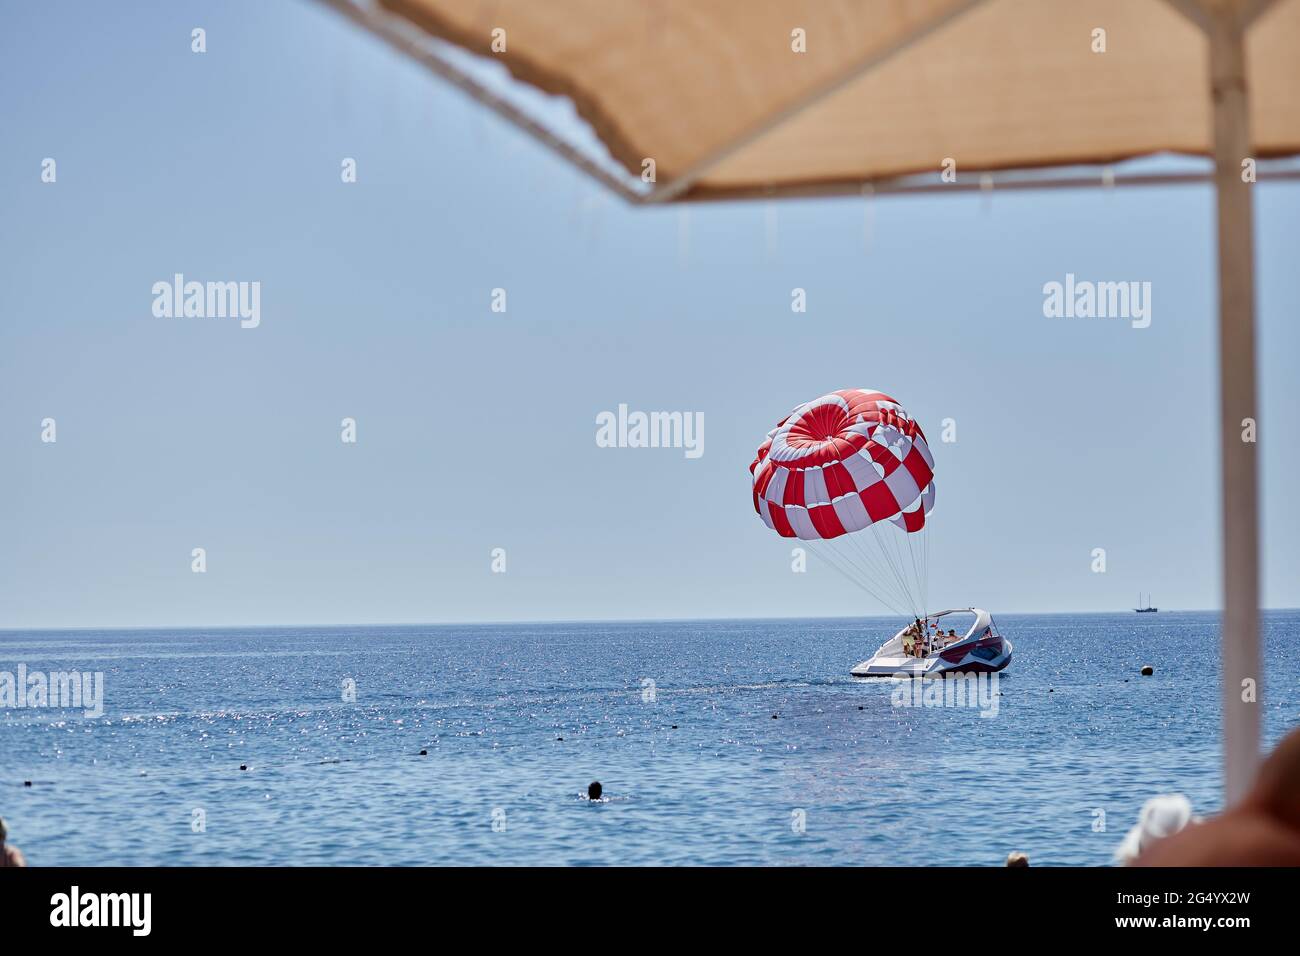 Kemer, Turquía - 25 de mayo de 2021: Actividades de verano en el agua: Parapente con paracaídas rojo. Fotografías de alta calidad Foto de stock